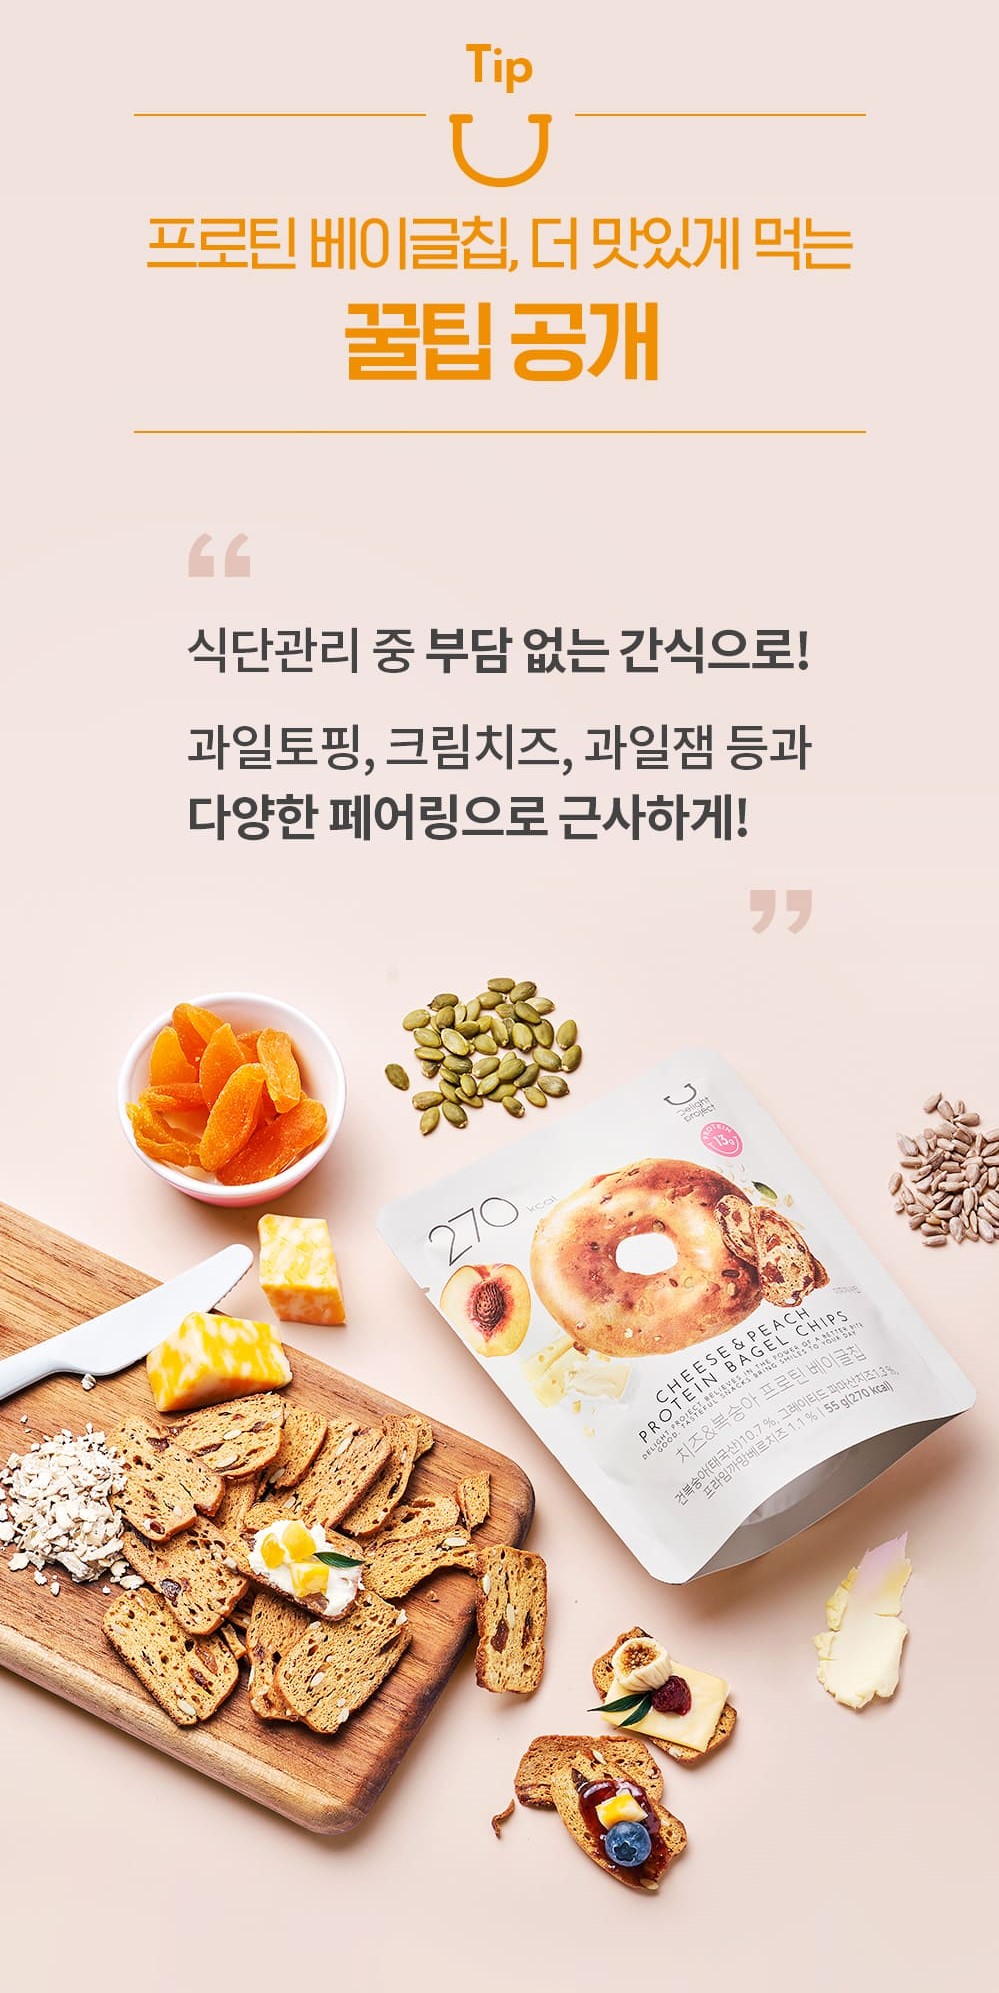 韓國食品-[딜라이트 프로젝트] 베이글칩 (치즈&복숭아) 55g